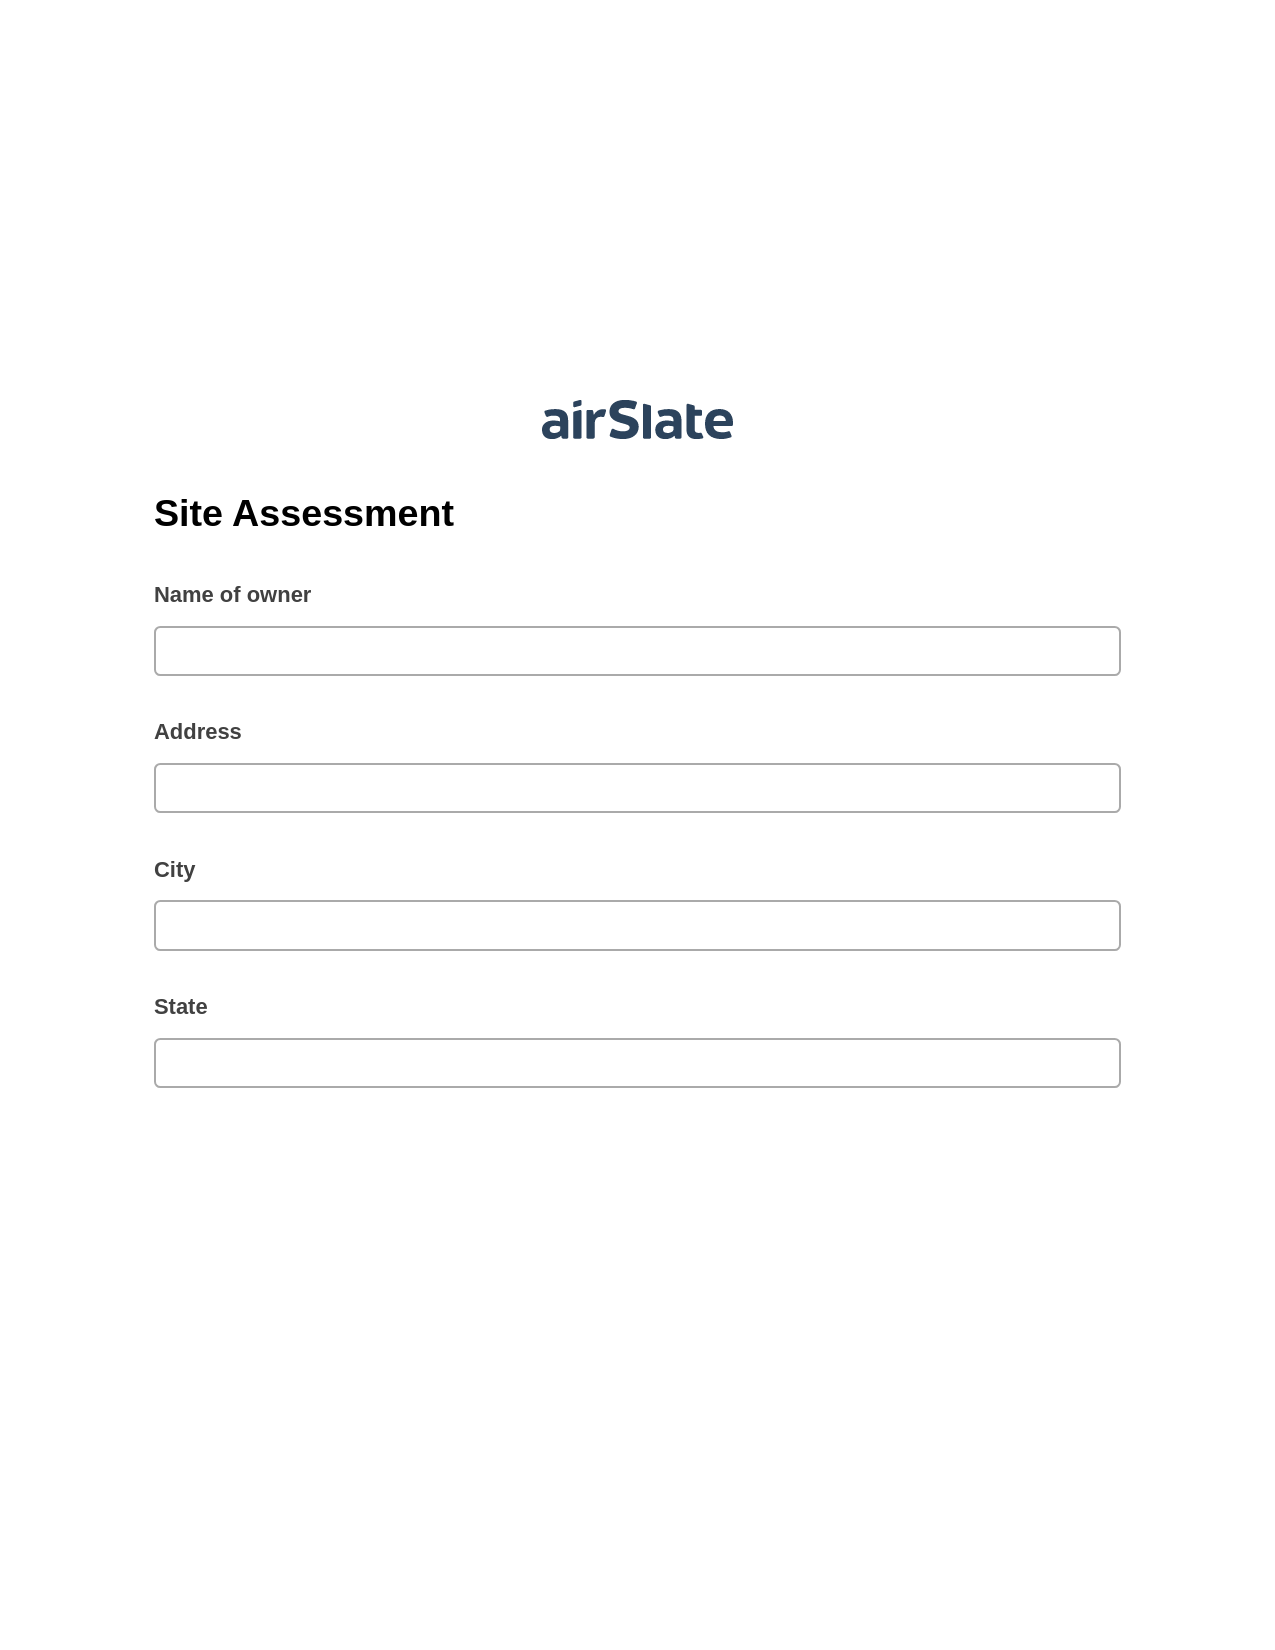 Site Assessment Pre-fill from Litmos bot, Lock the slate bot, OneDrive Bot